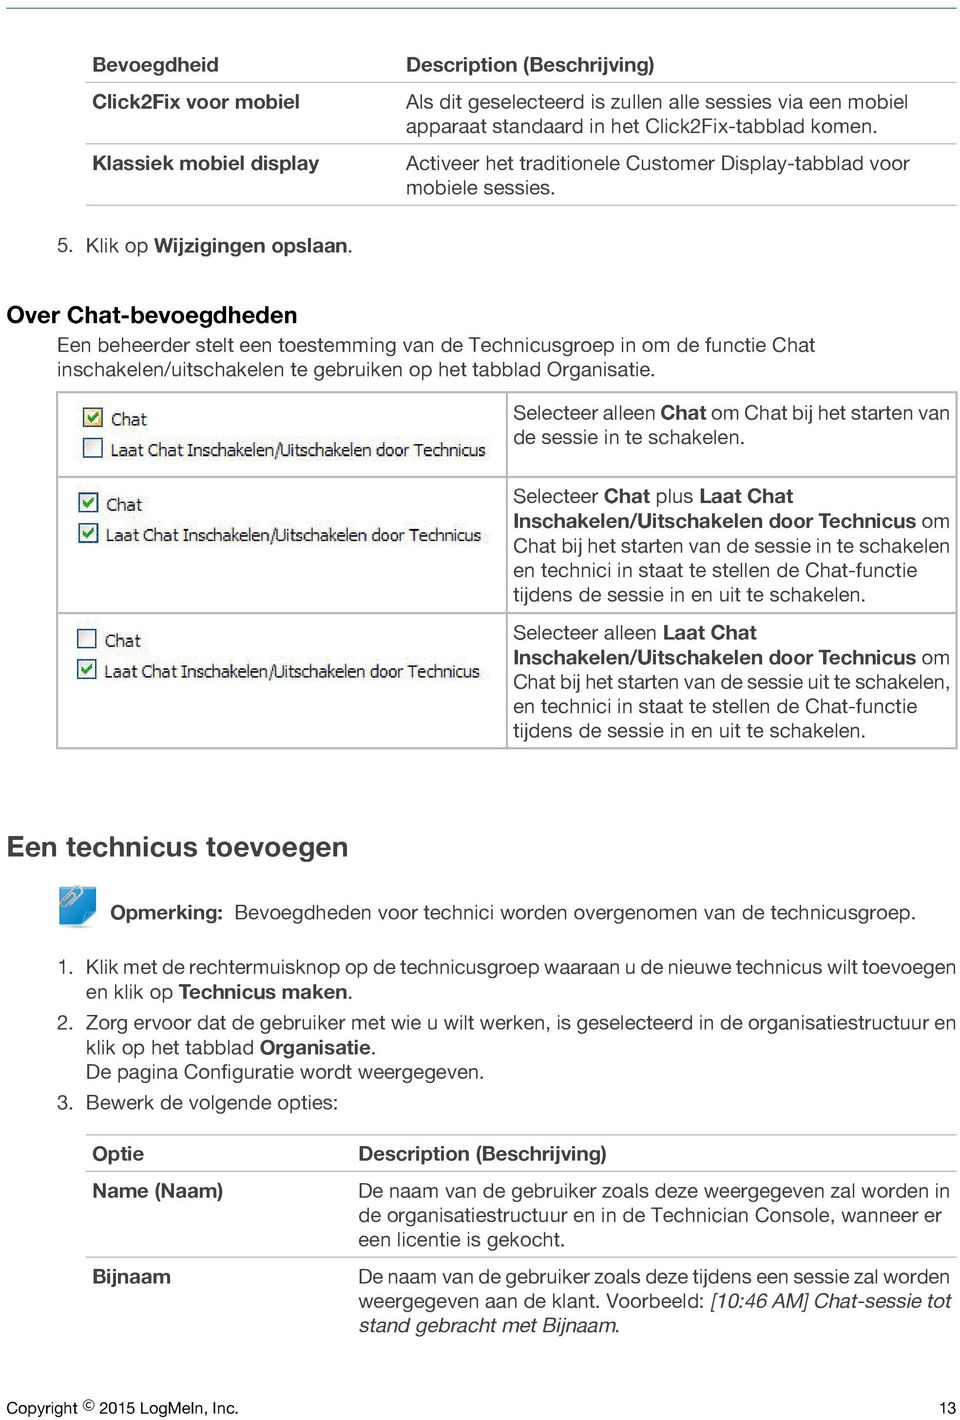 Over Chat-bevoegdheden Een beheerder stelt een toestemming van de Technicusgroep in om de functie Chat inschakelen/uitschakelen te gebruiken op het tabblad Organisatie.